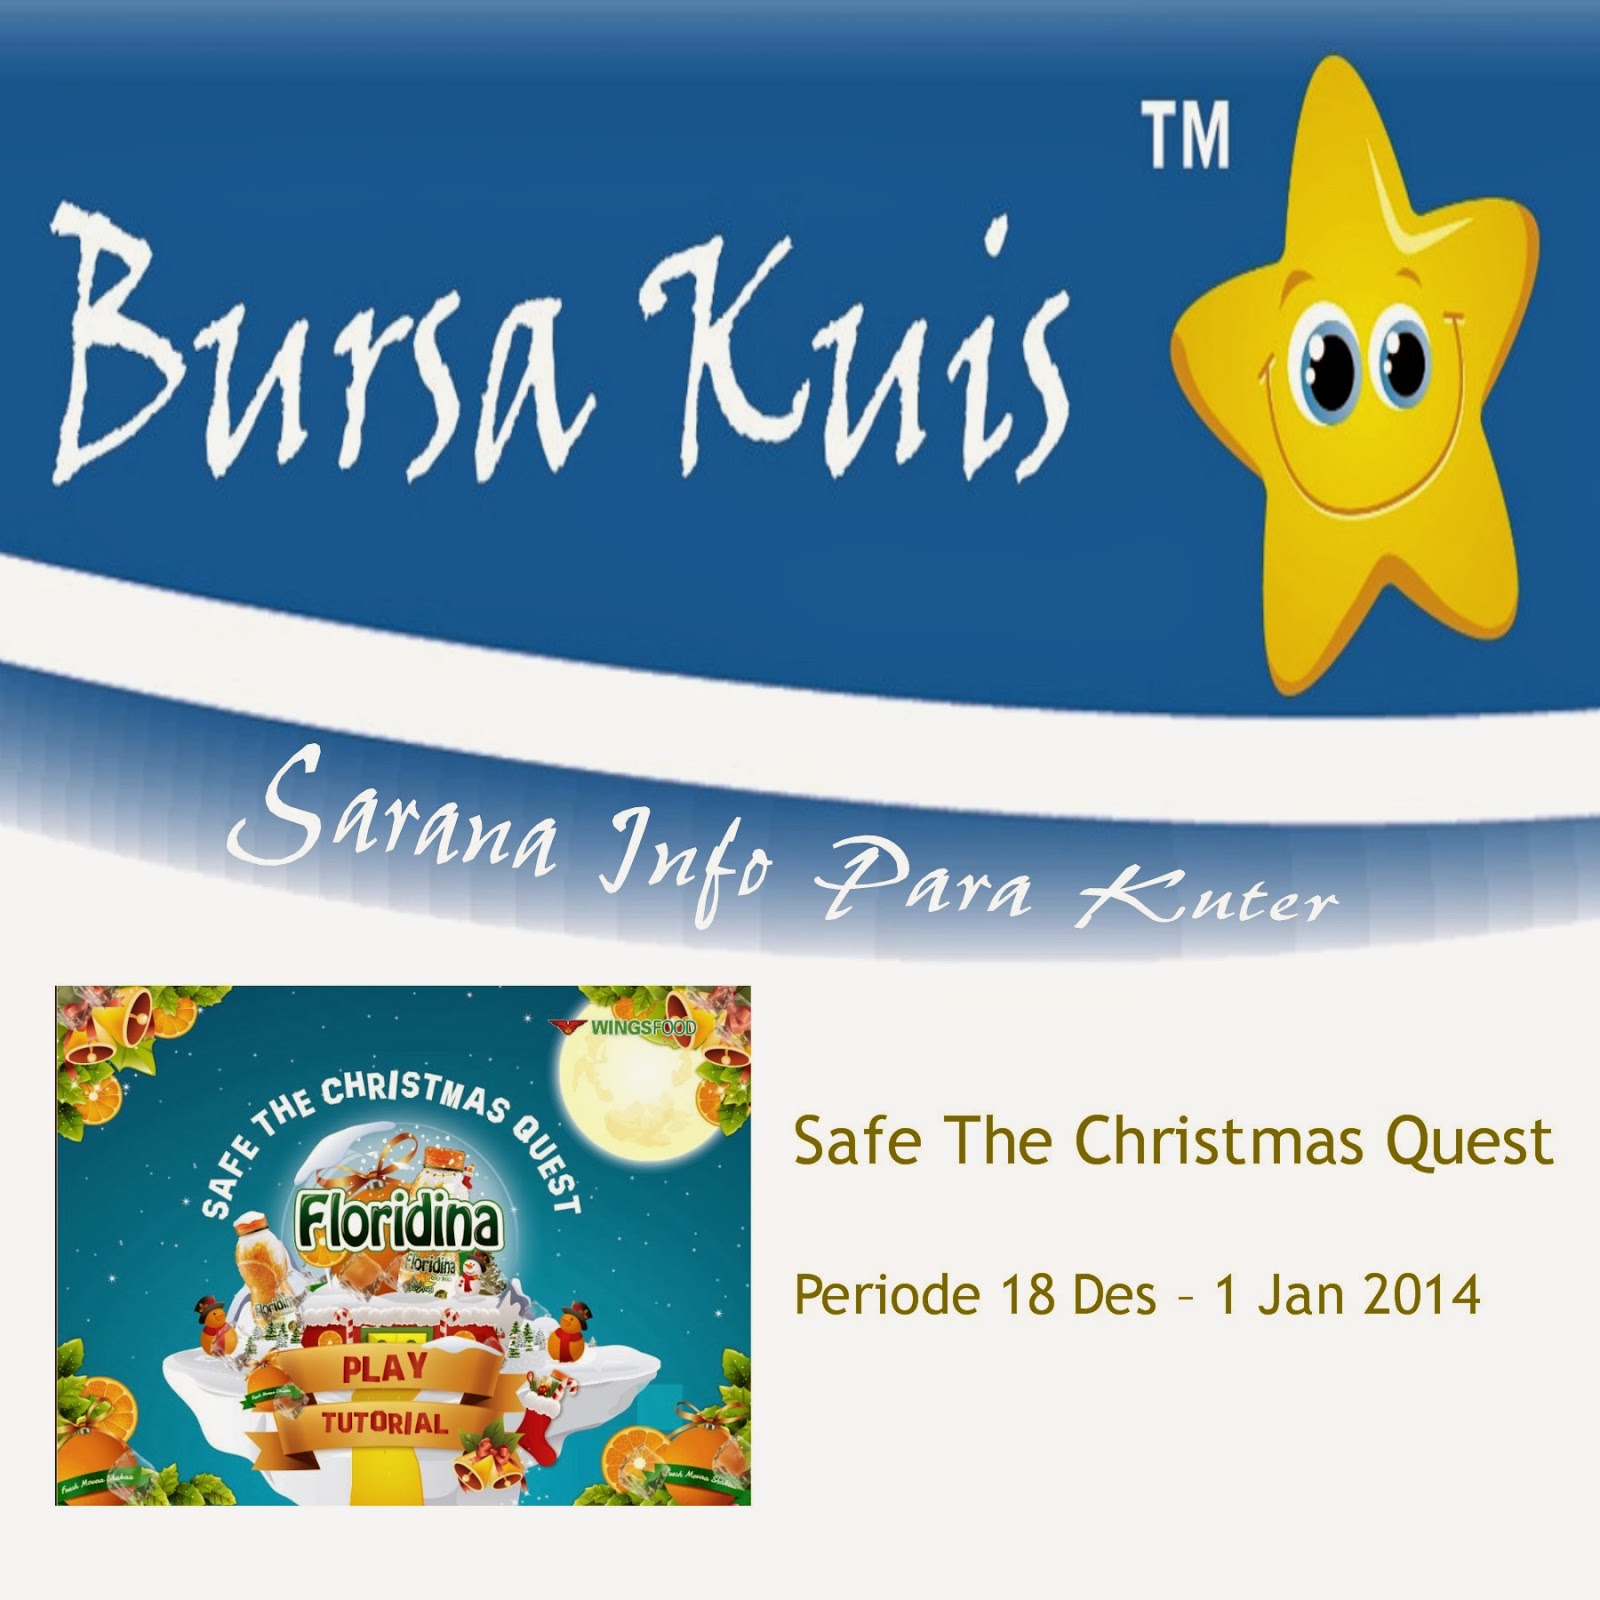 Terima kasih untuk partisipasi kamu ikutan game Floridina Safe The Christmas Quest